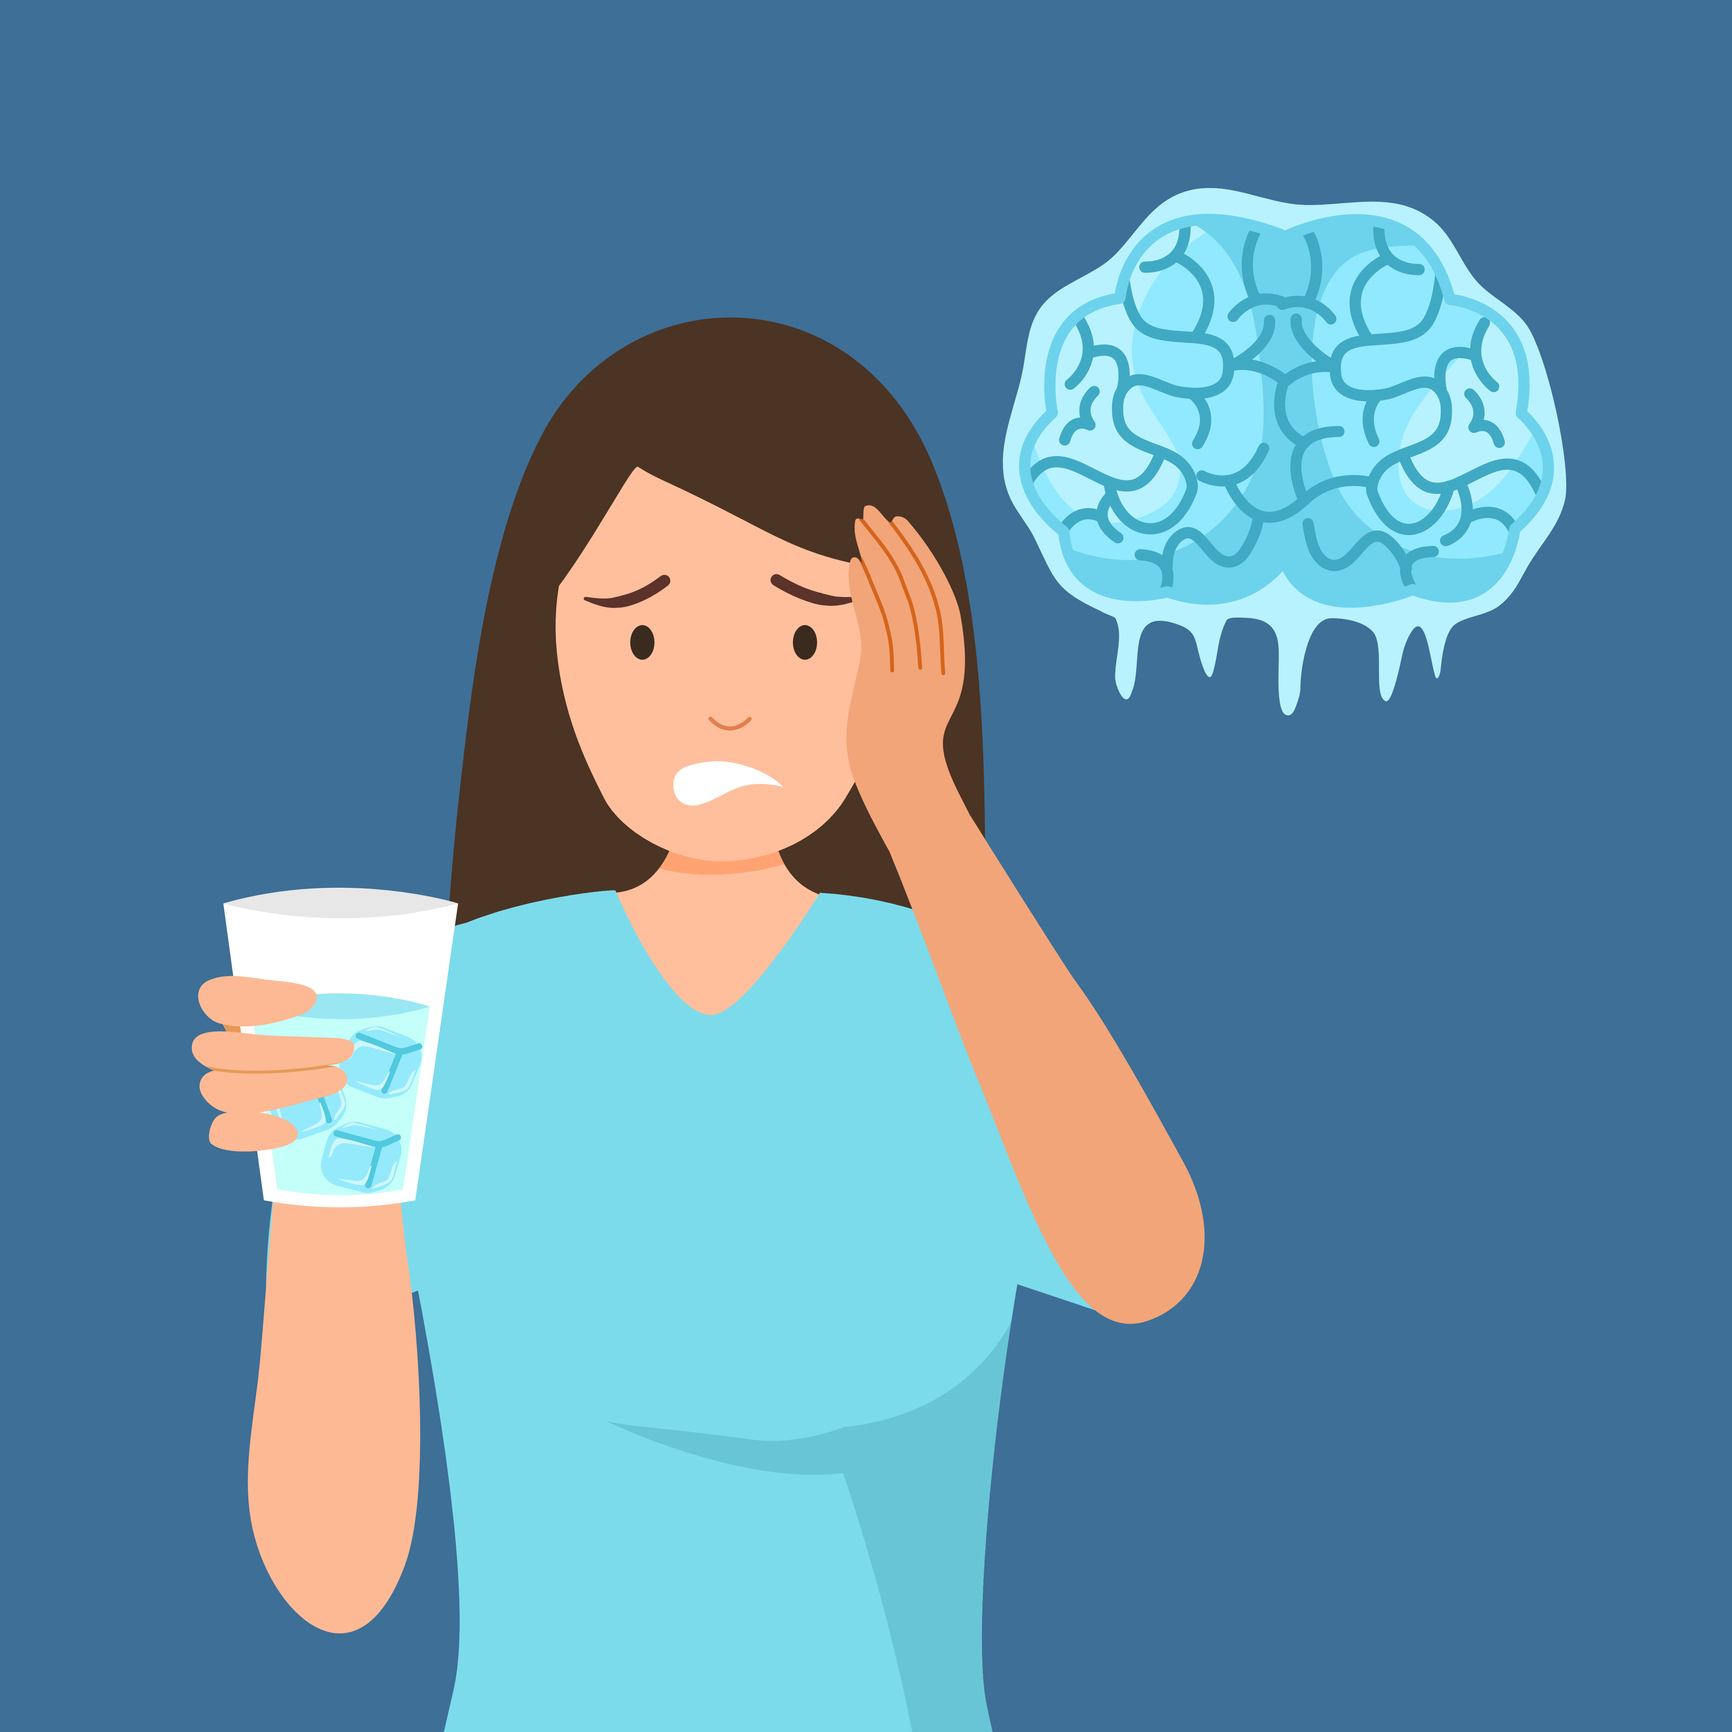 Eine Grafik zeigt eine Frau, die ein kaltes GetrÃ¤nk mit EiswÃ¼rfeln in der Hand hÃ¤lt. Rechts neben ihrem Kopf ist ein eingefrorenes Gehirn zu sehen â€“ offensichtlich hat sie zu schnell getrunken.